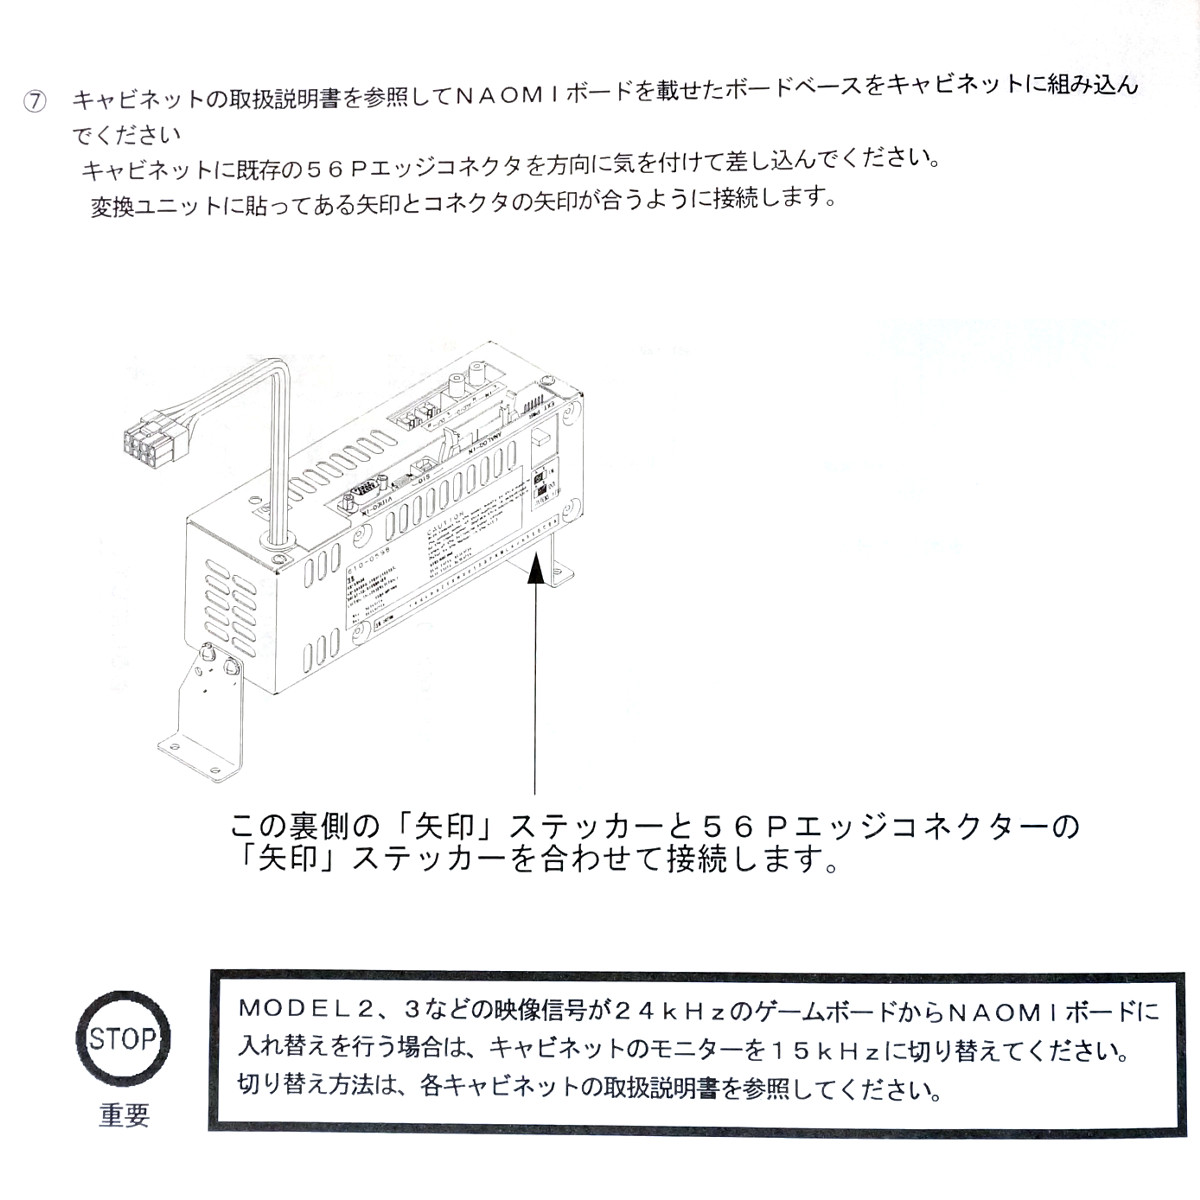 【中古】 セガ NAOMI セガ製コンバーター用 取付け金具(足) ネジ付 【U-SEG-CNV-BRKT】